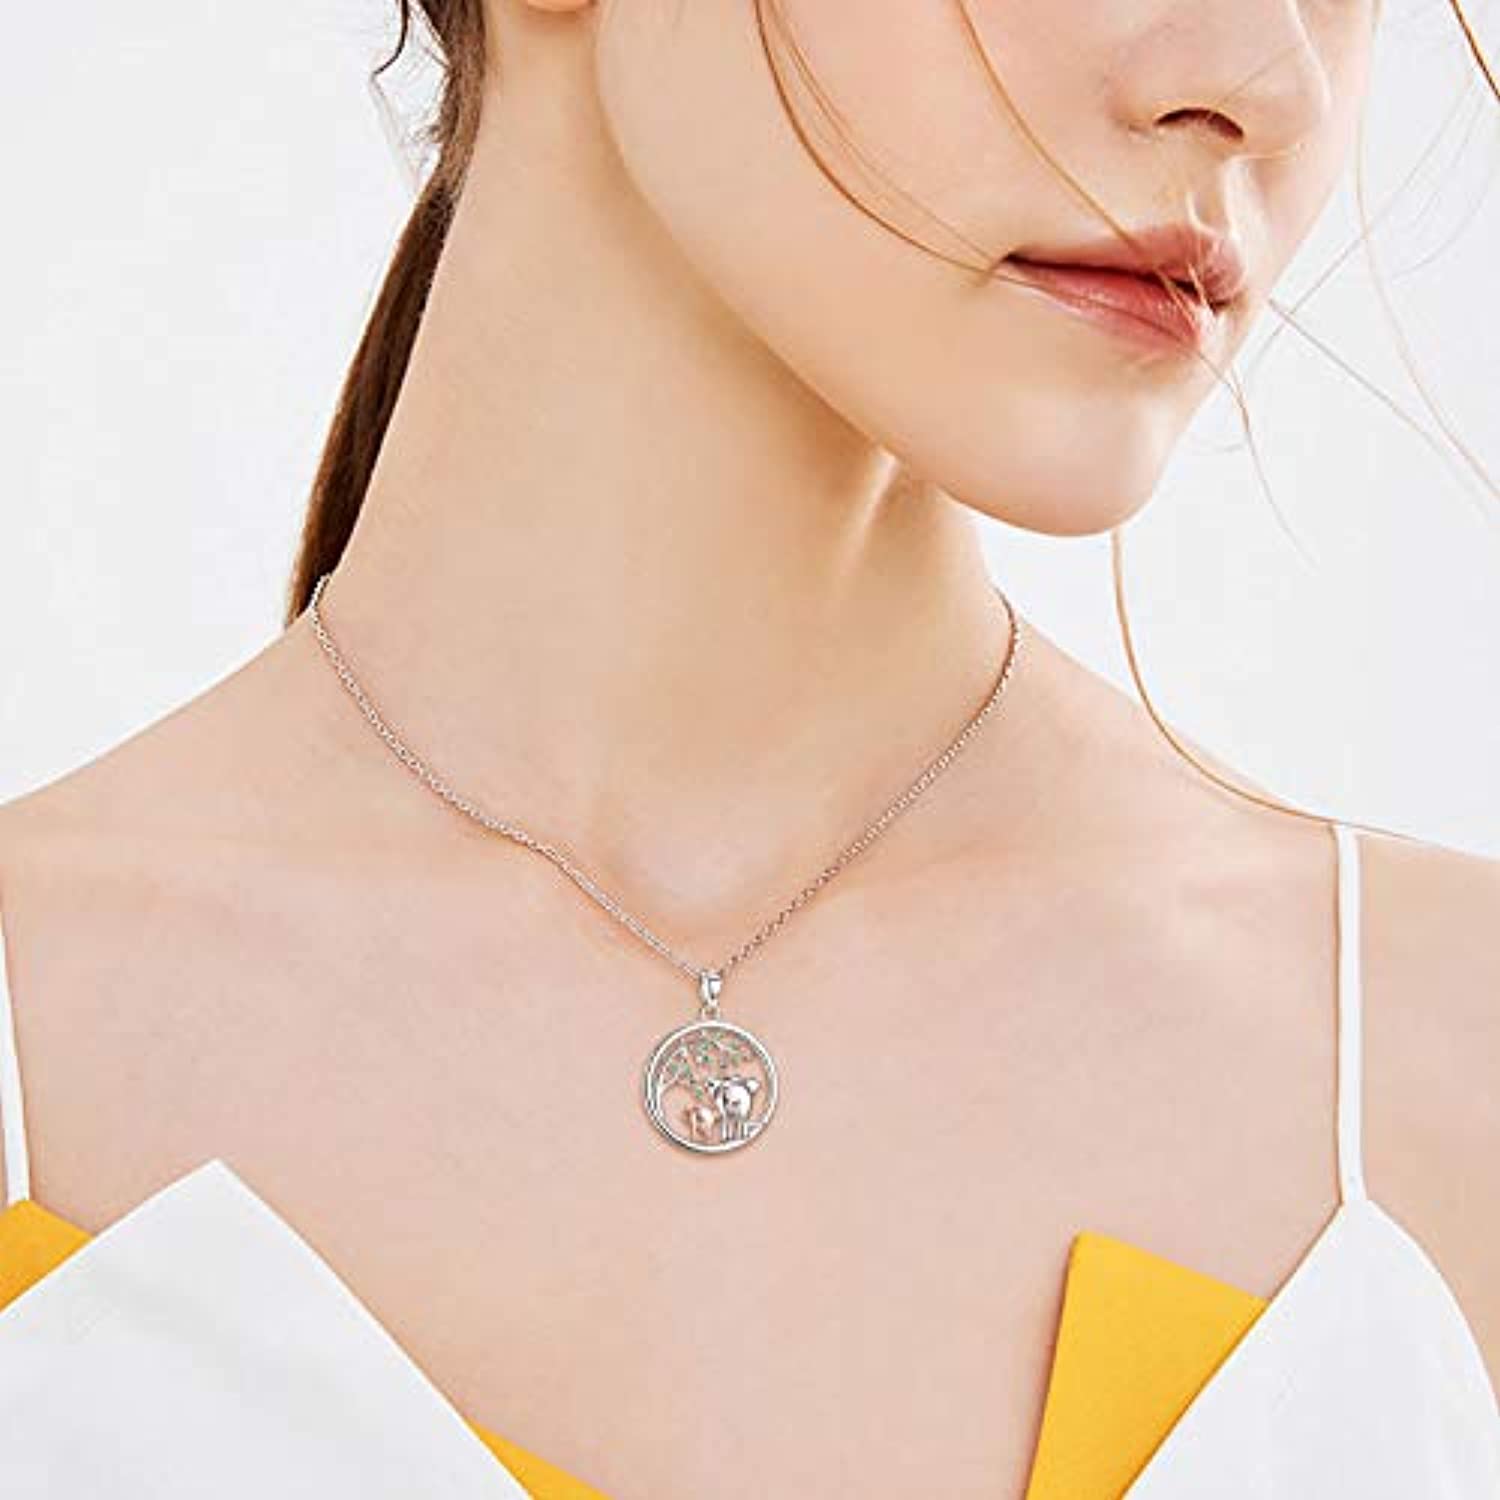 Jewelry for daughters | Pandora Jewelry | Pandora